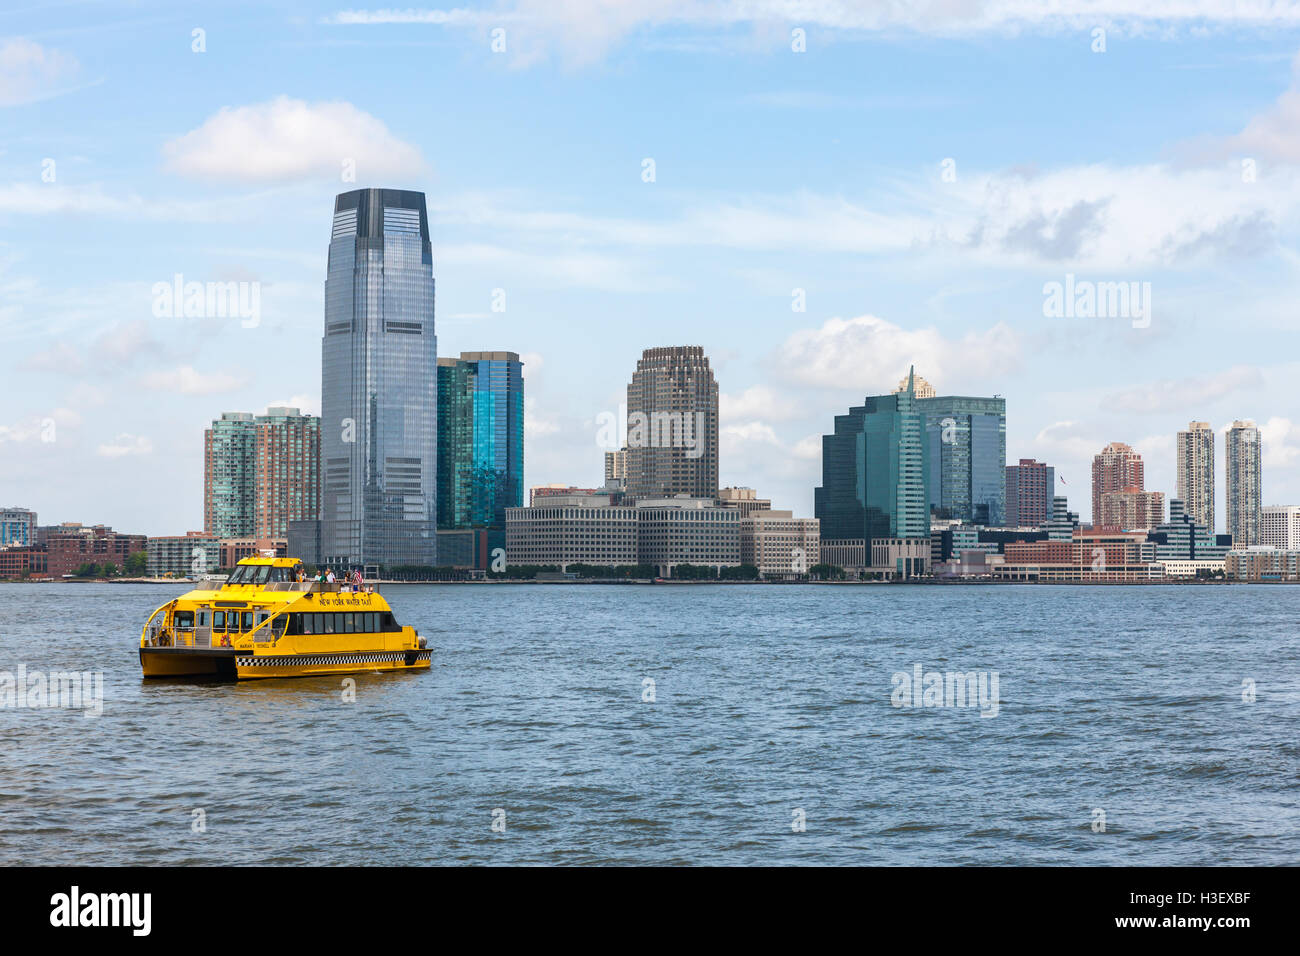 Un Taxi Acuático de Nueva York Jefes hacia el sur por el Río Hudson pasado la Torre Goldman Sachs y el horizonte de la ciudad de Jersey, Nueva Jersey. Foto de stock